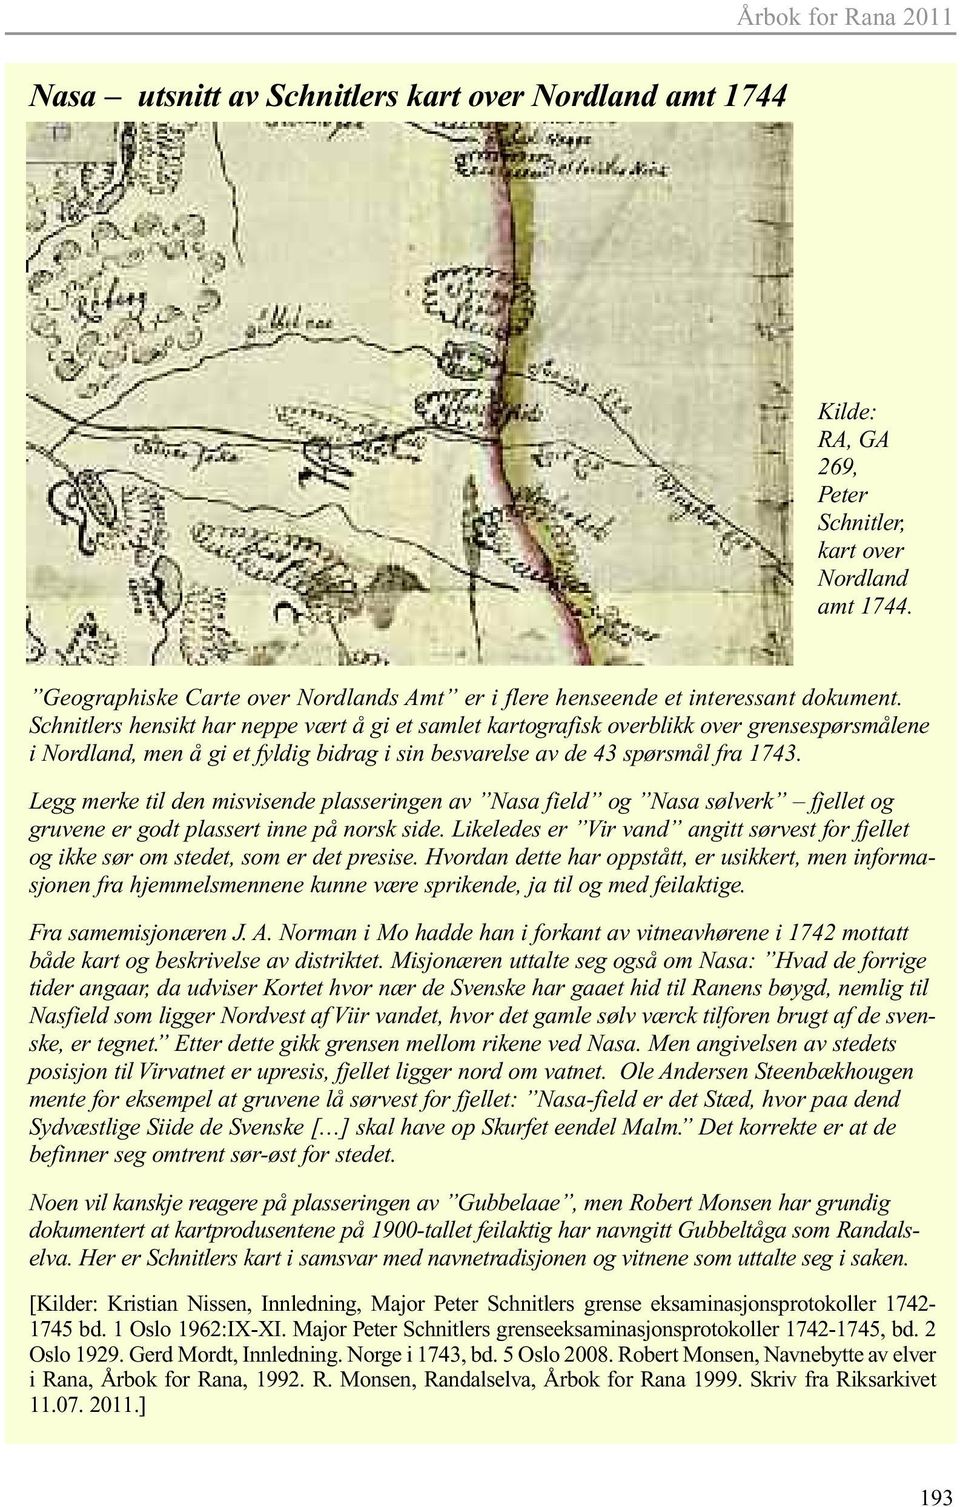 Schnitlers hensikt har neppe vært å gi et samlet kartografisk overblikk over grensespørsmålene i Nordland, men å gi et fyldig bidrag i sin besvarelse av de 43 spørsmål fra 1743.